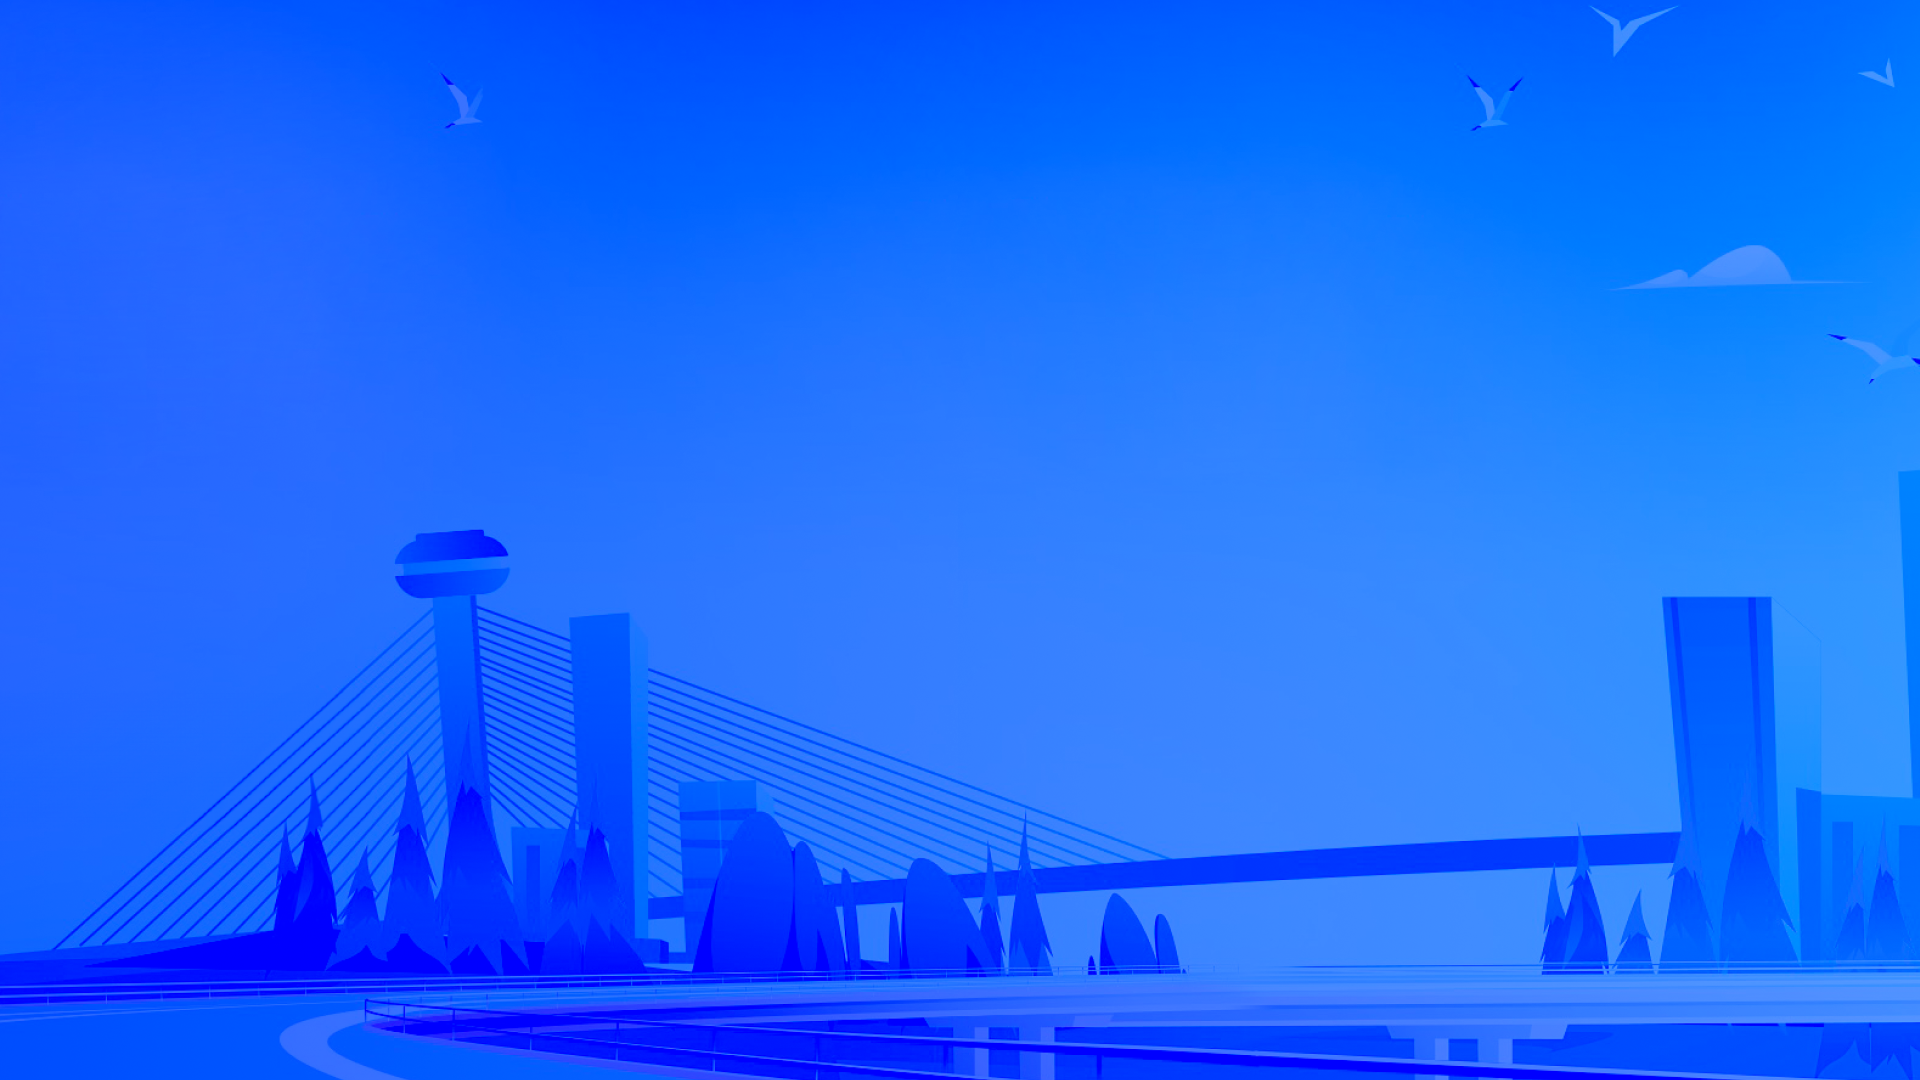 Uma ilustração em tons de azul de Teresina, Piauí, com a Ponte Estaiada, o mirante e prédios ao fundo. Gaivotas voam no céu azul claro com nuvens esparsas. Uma estrada margeia o rio Poti em primeiro plano.